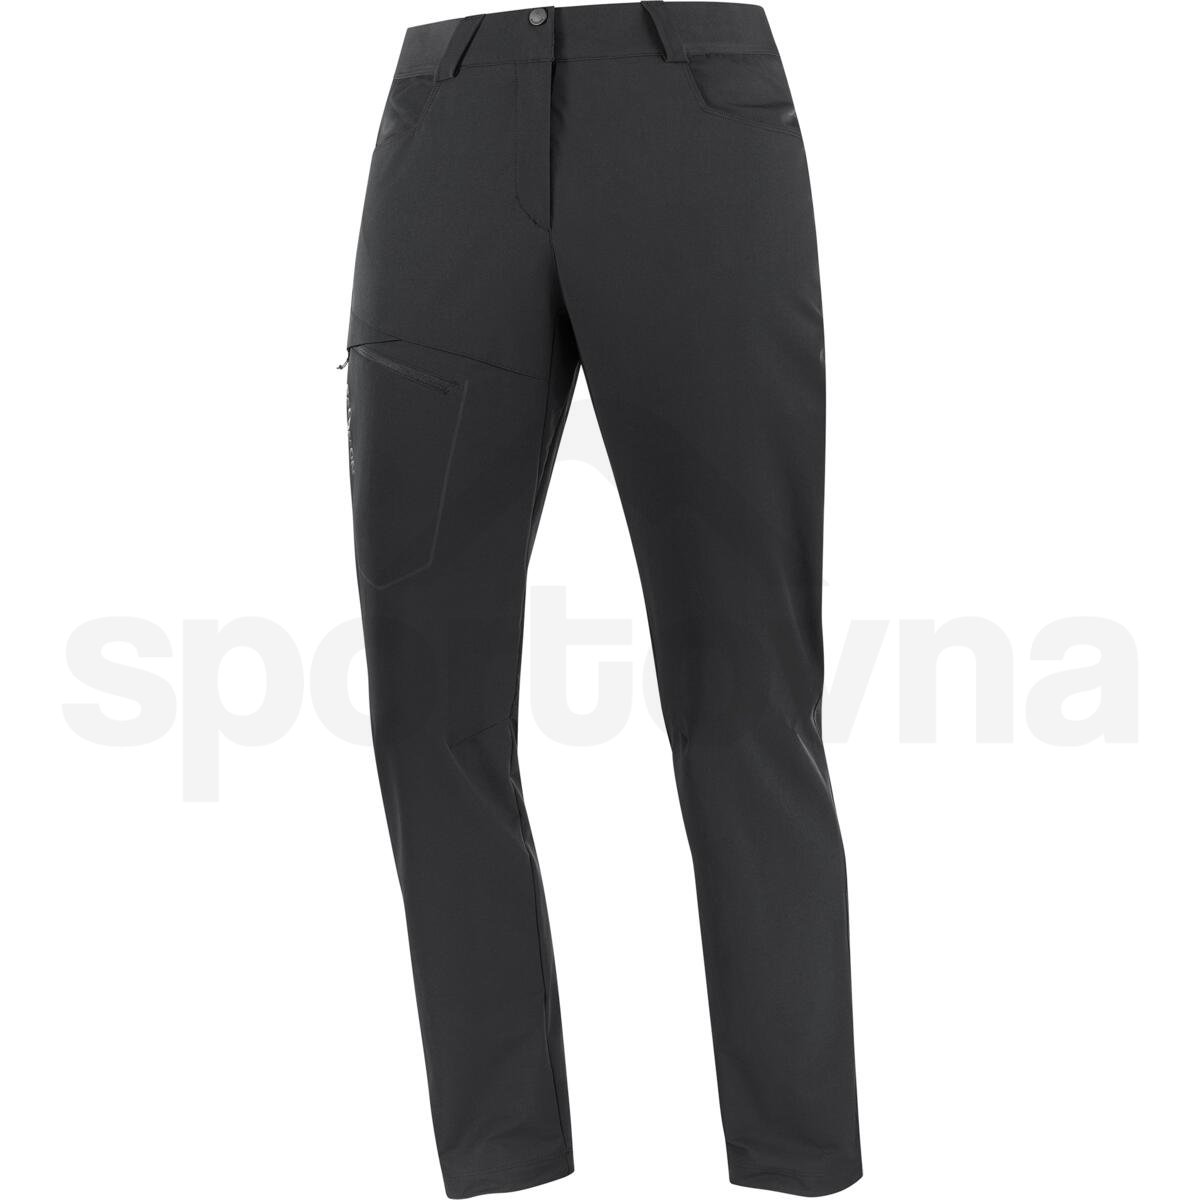 Kalhoty Salomon Wayfarer Warm Pants W - černá (standardní délka)